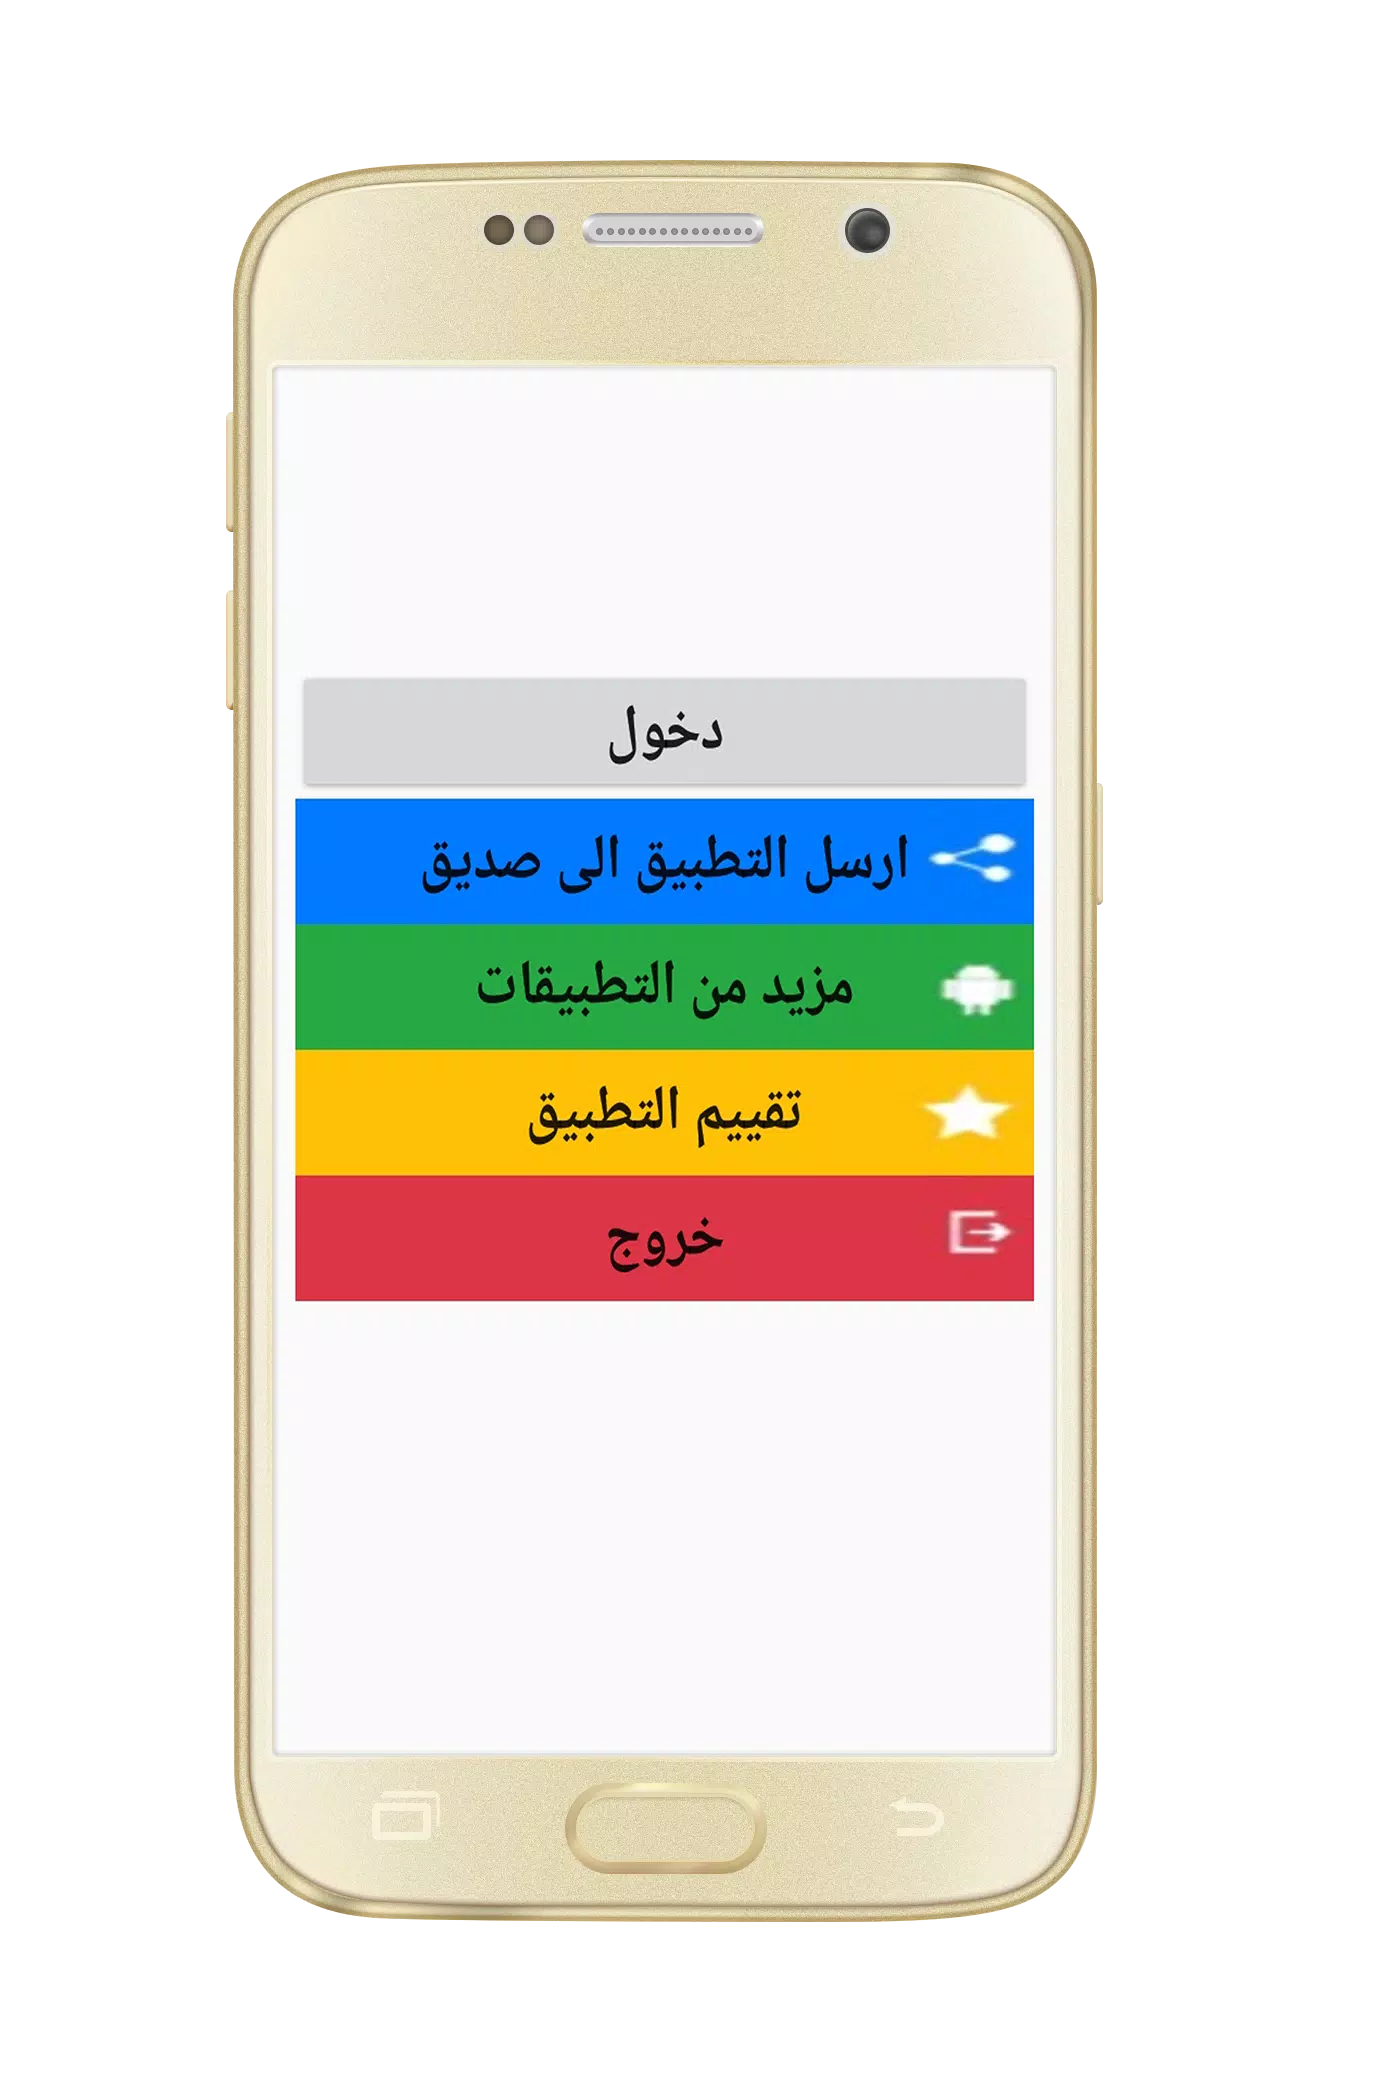 اغاني عزيزة جلال mp3 APK for Android Download